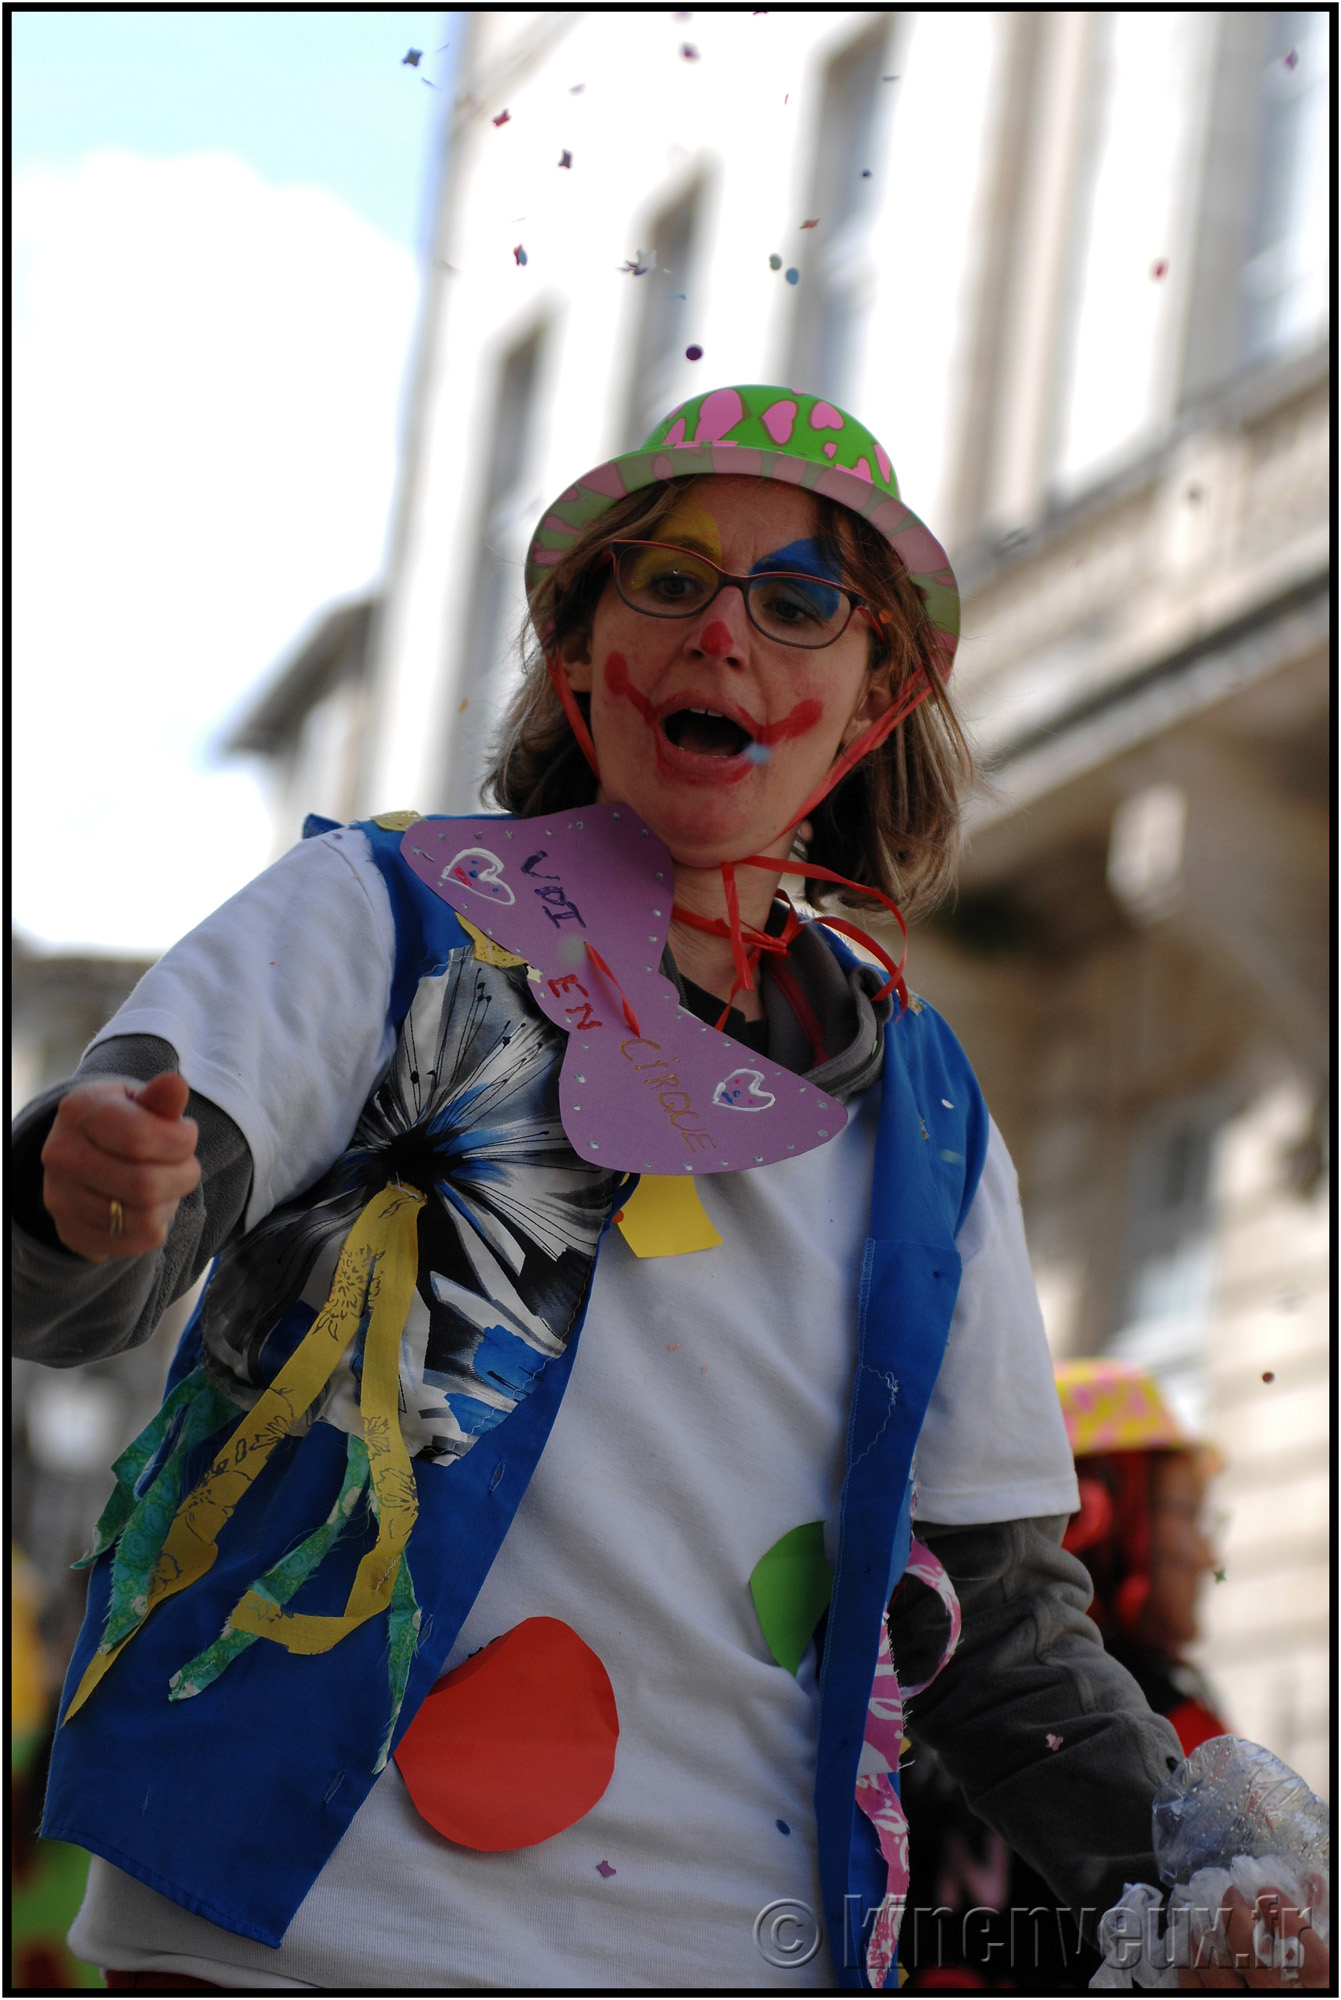 kinenveux_72_carnaval2015lr.jpg - Carnaval des Enfants 2015 - La Rochelle